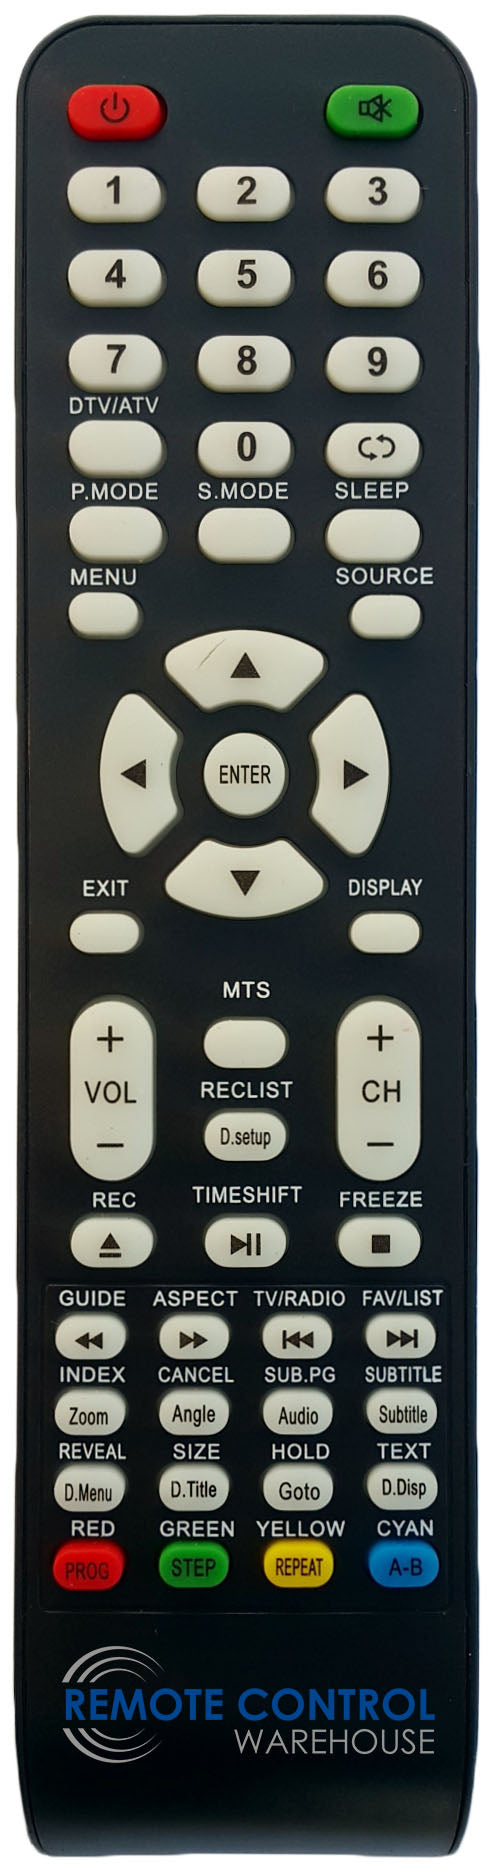 REPLACEMENT GVA REMOTE CONTROL FOR GVA  G18TVC15  TV - Remote Control Warehouse